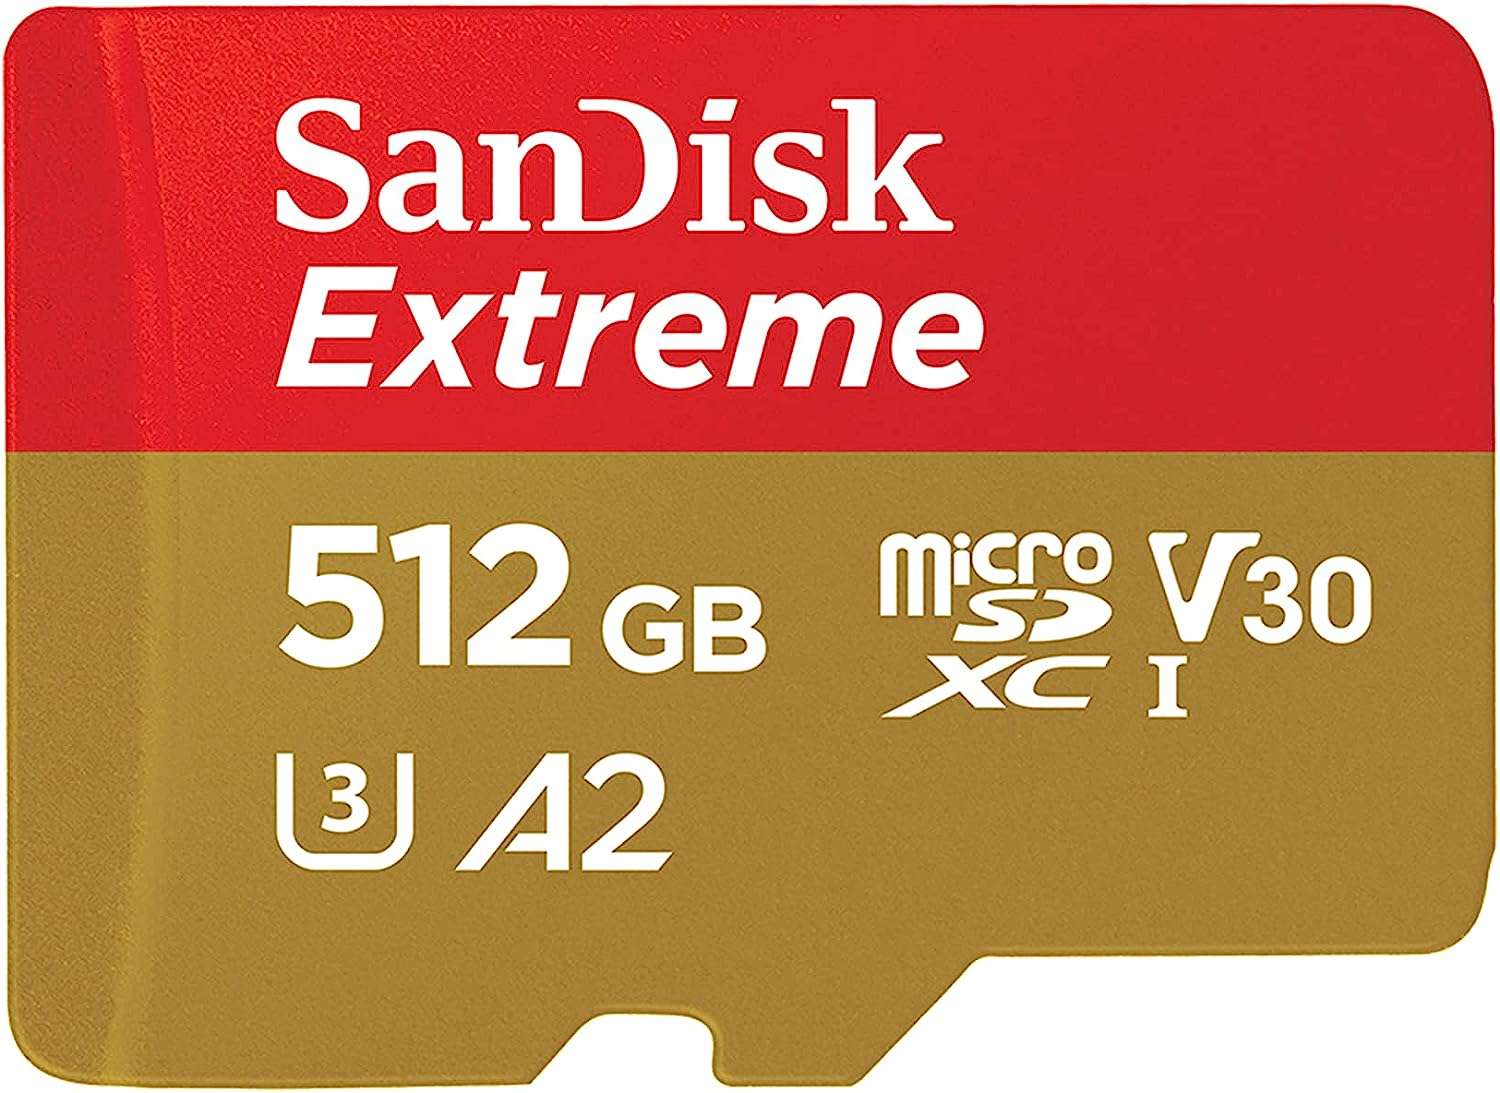 SanDisk Extreme Pro - Carte mémoire flash (adaptateur microSDXC vers SD  inclus(e)) - 512 Go - A2 / Video Class V30 / UHS-I U3 / Class10 - microSDXC  UHS-I - Carte mémoire